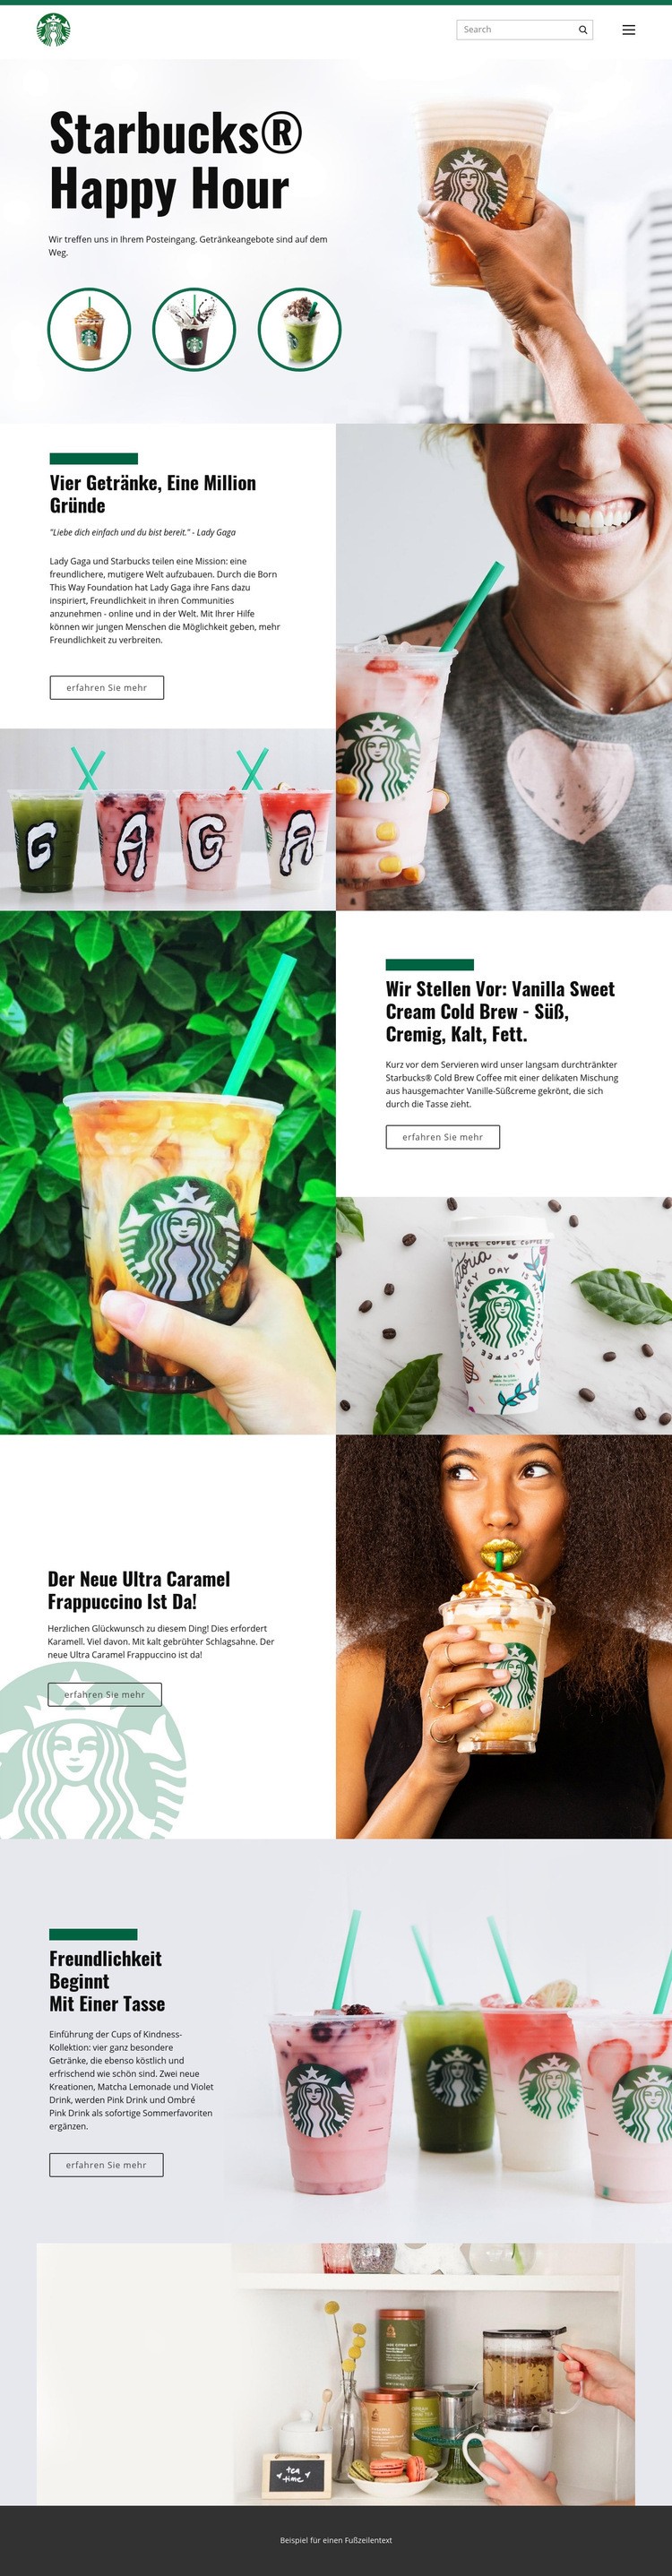 Starbucks Kaffee Website-Modell